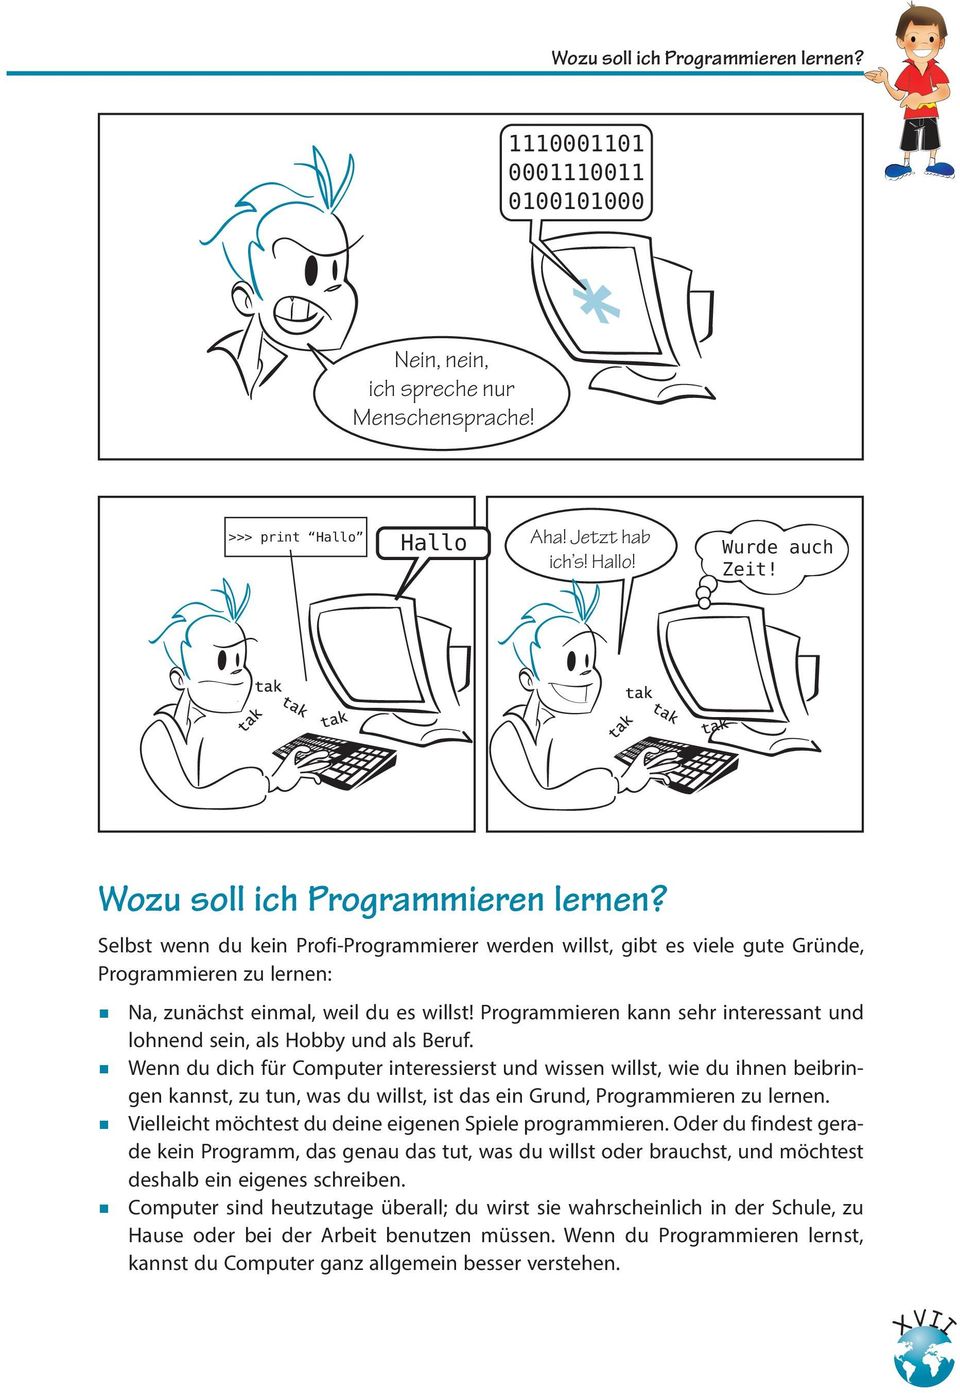 Programmieren kann sehr interessant und lohnend sein, als Hobby und als Beruf.